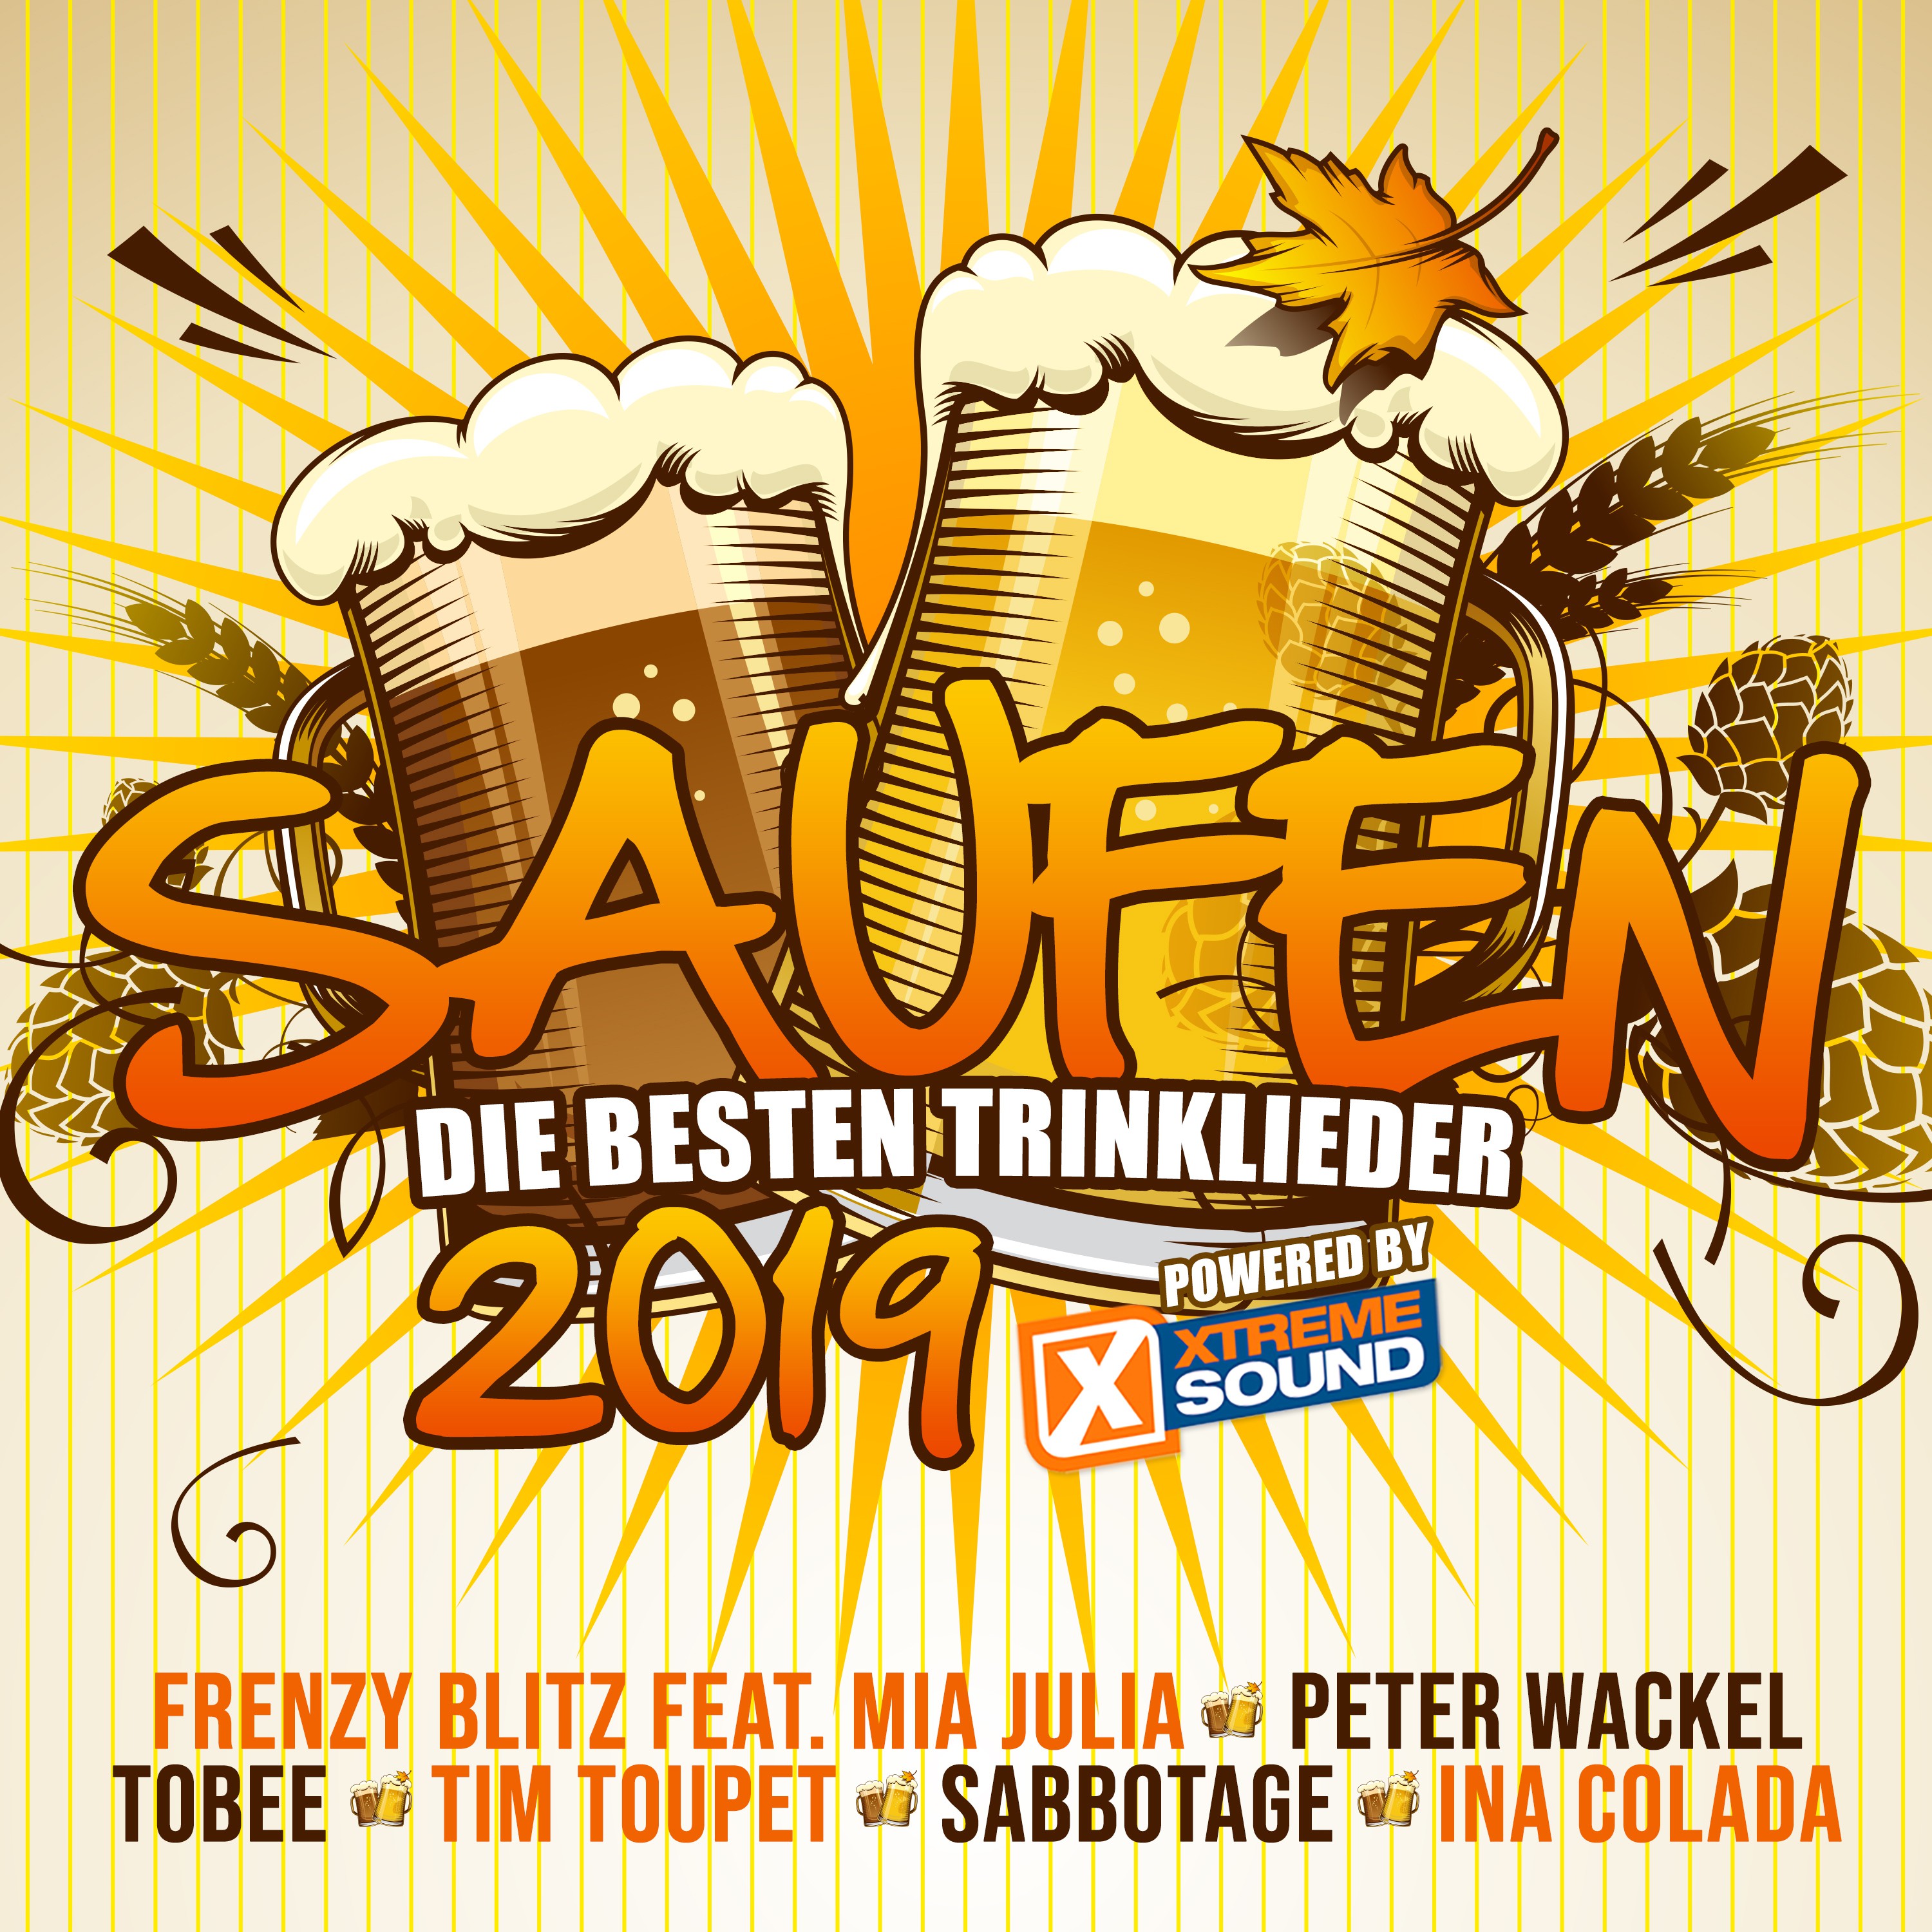 Saufen - Die besten Trinklieder 2019 powered by Xtreme Sound